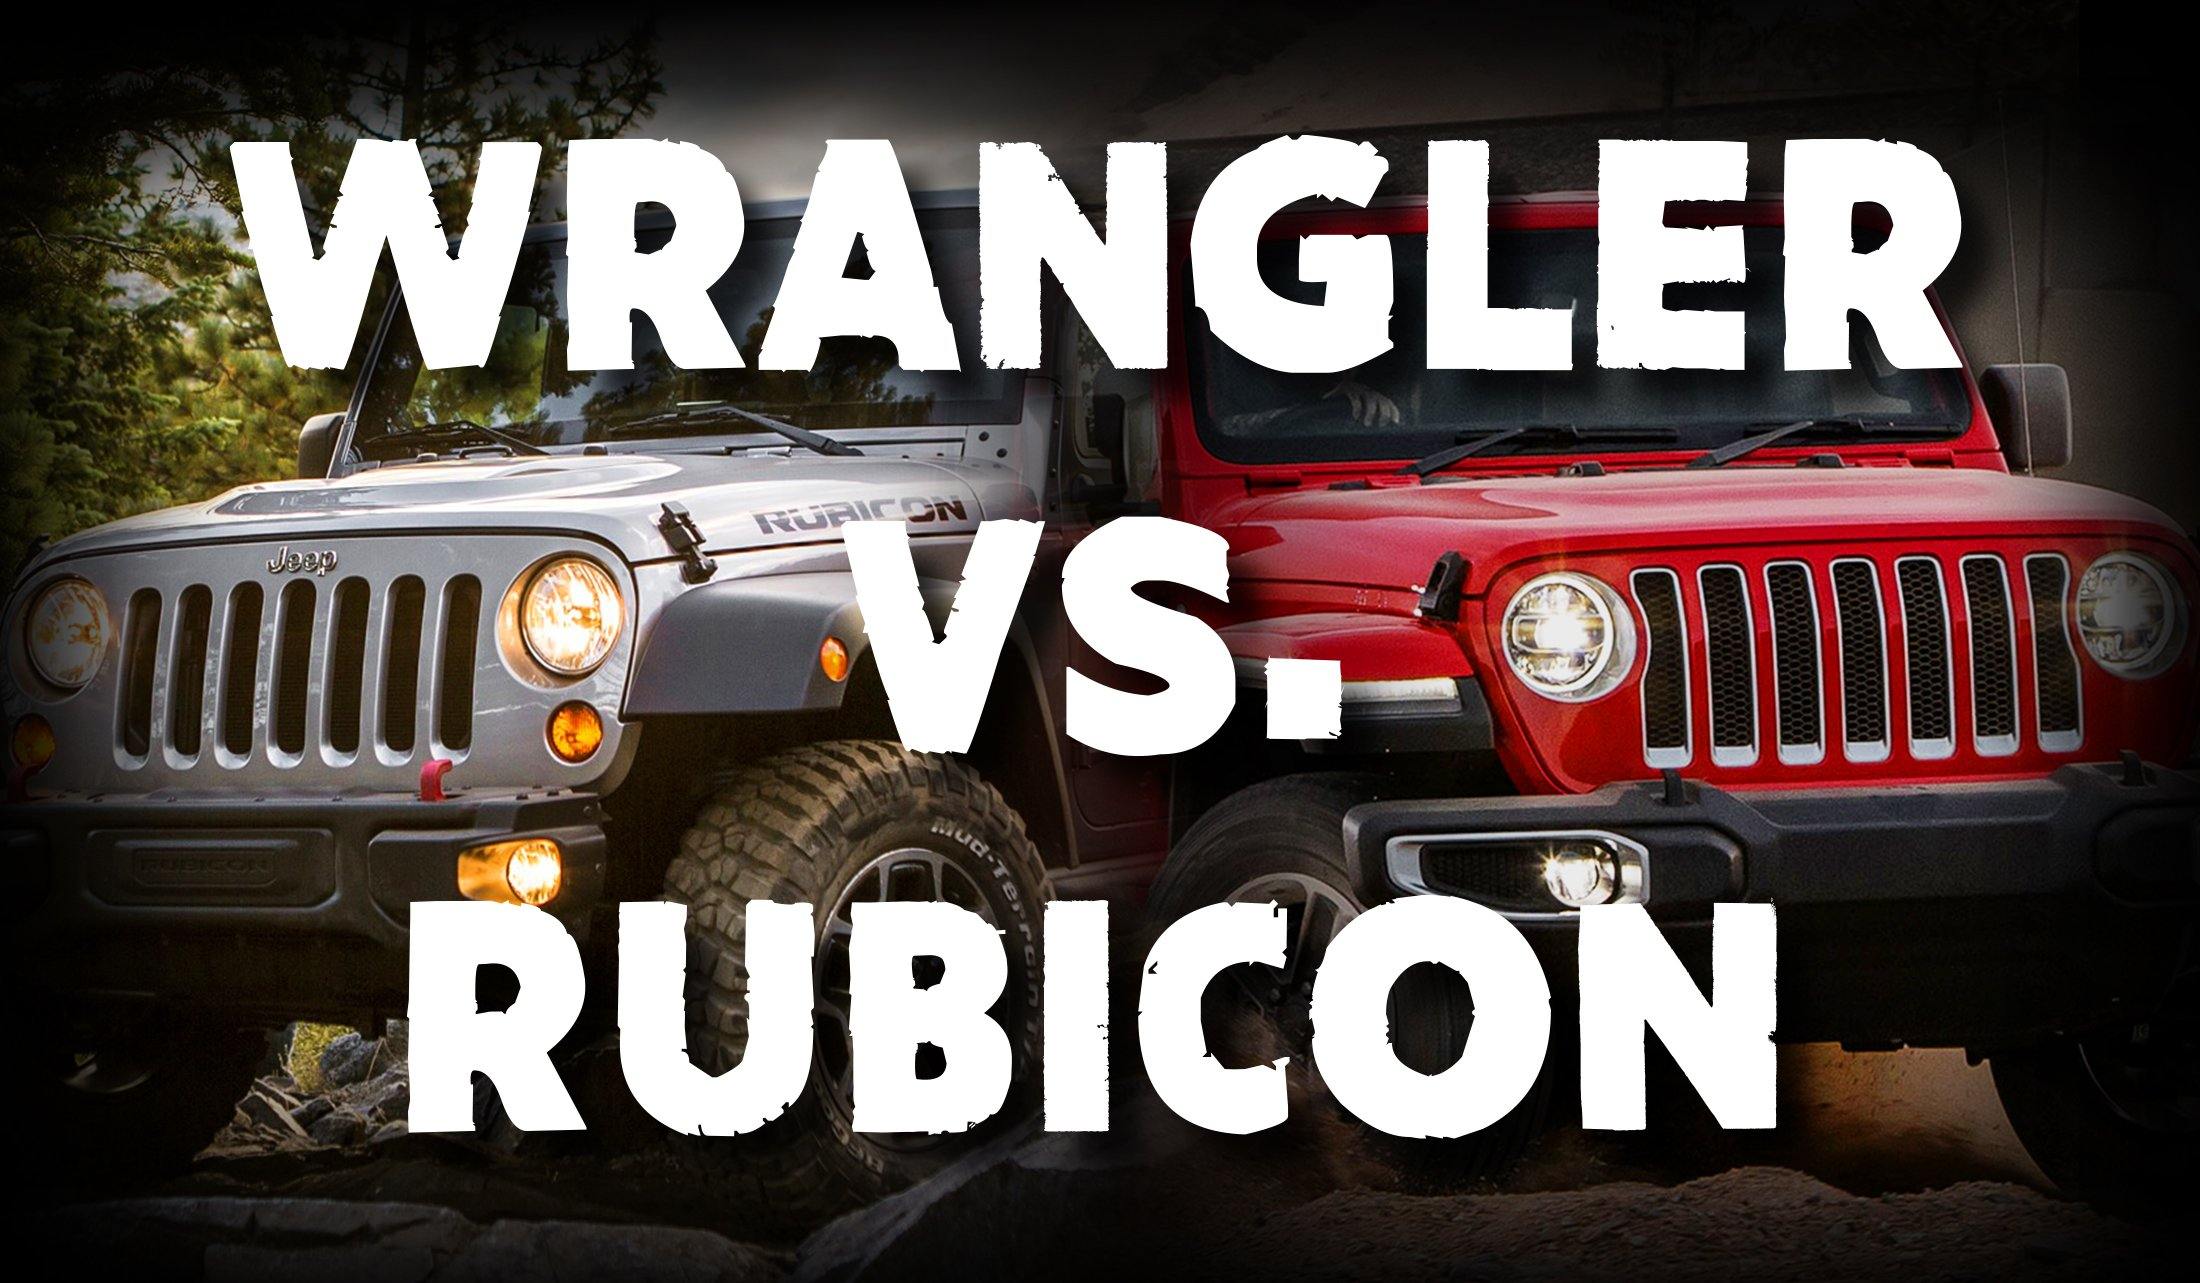 Wrangler vs. Rubicon